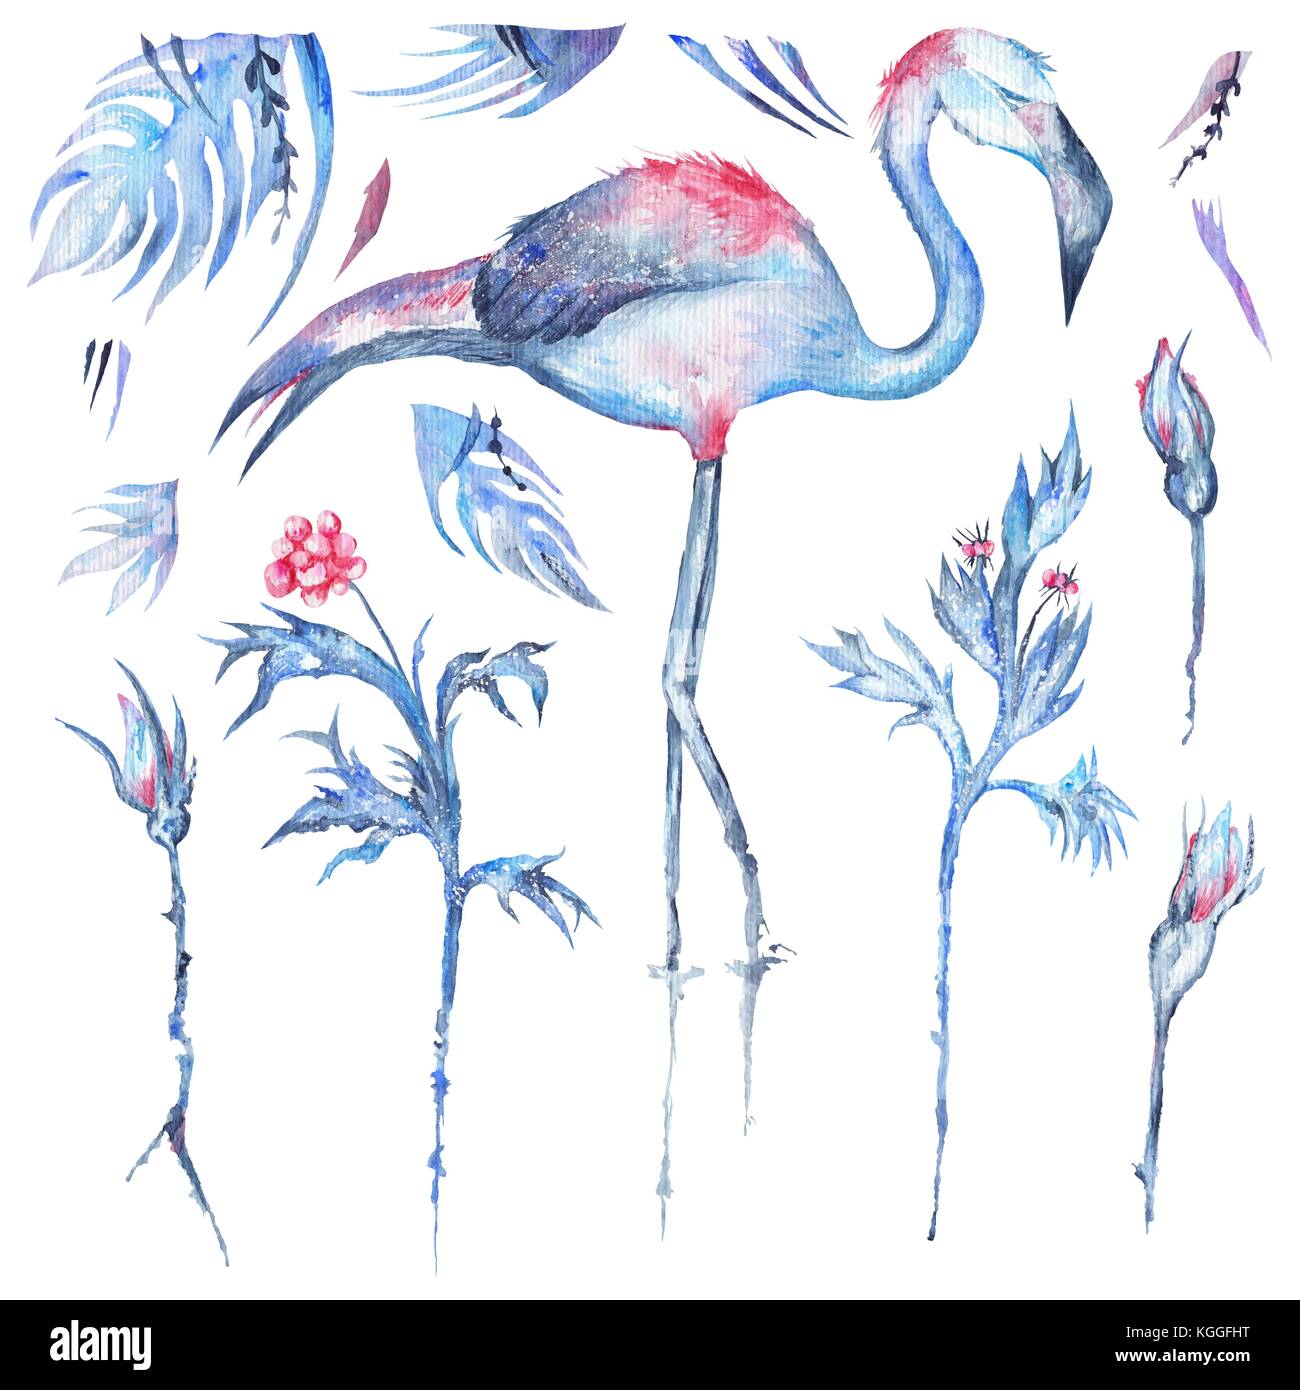 Esotiche foglie delle palme, rose e flamingo bird set isolato su sfondo bianco Foto Stock